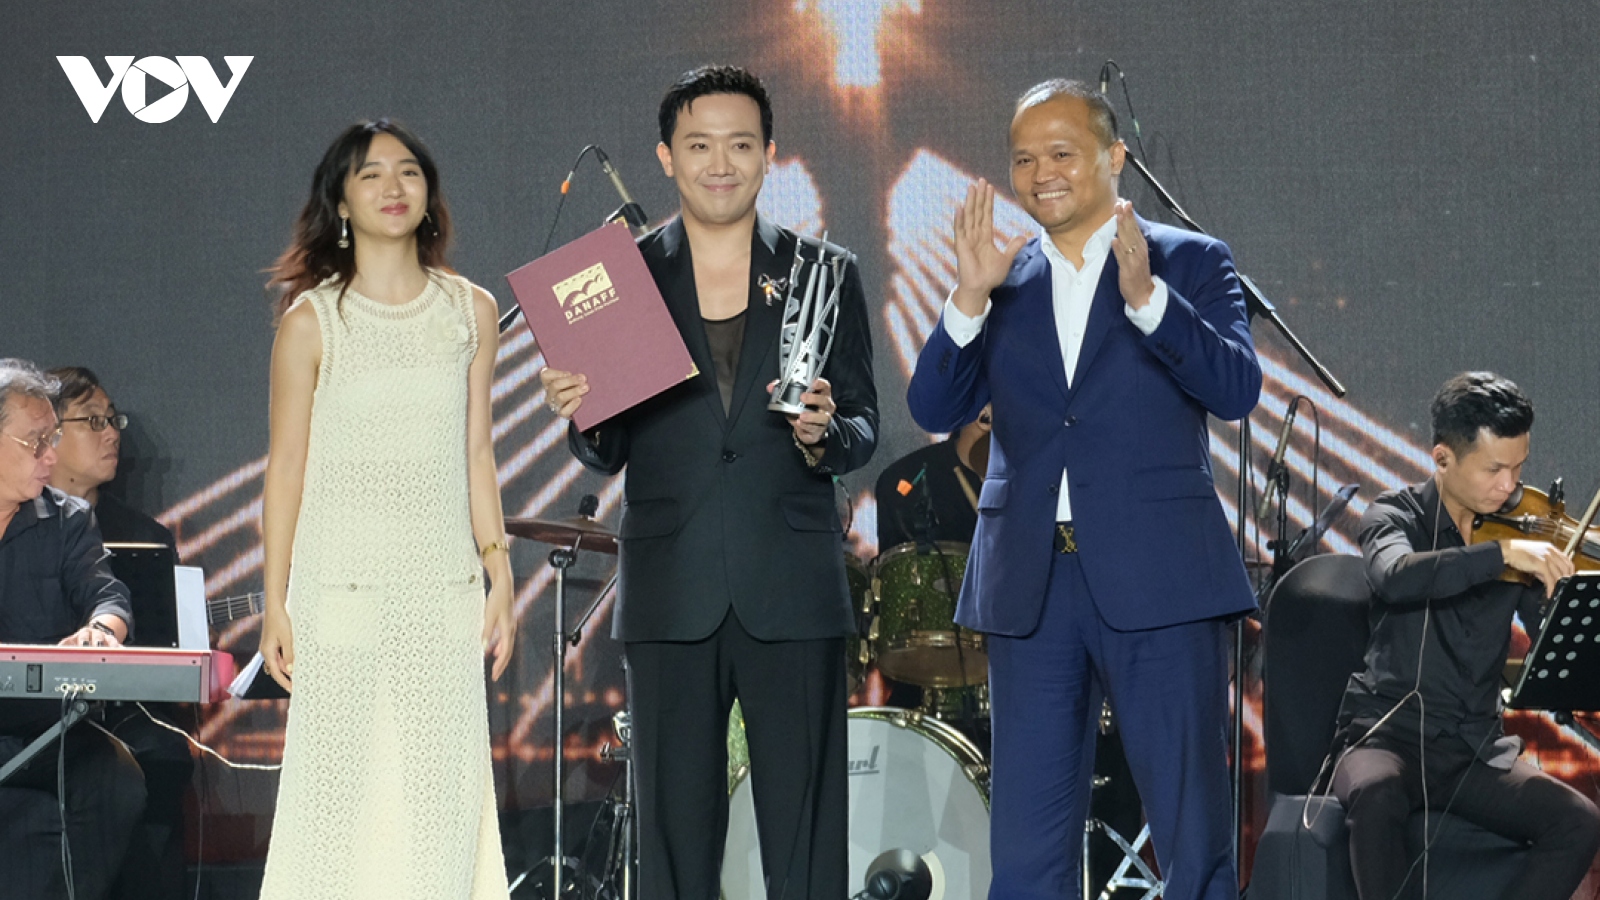 "Mai", "Cu li không bao giờ khóc" chiến thắng tại Liên hoan phim châu Á Đà Nẵng